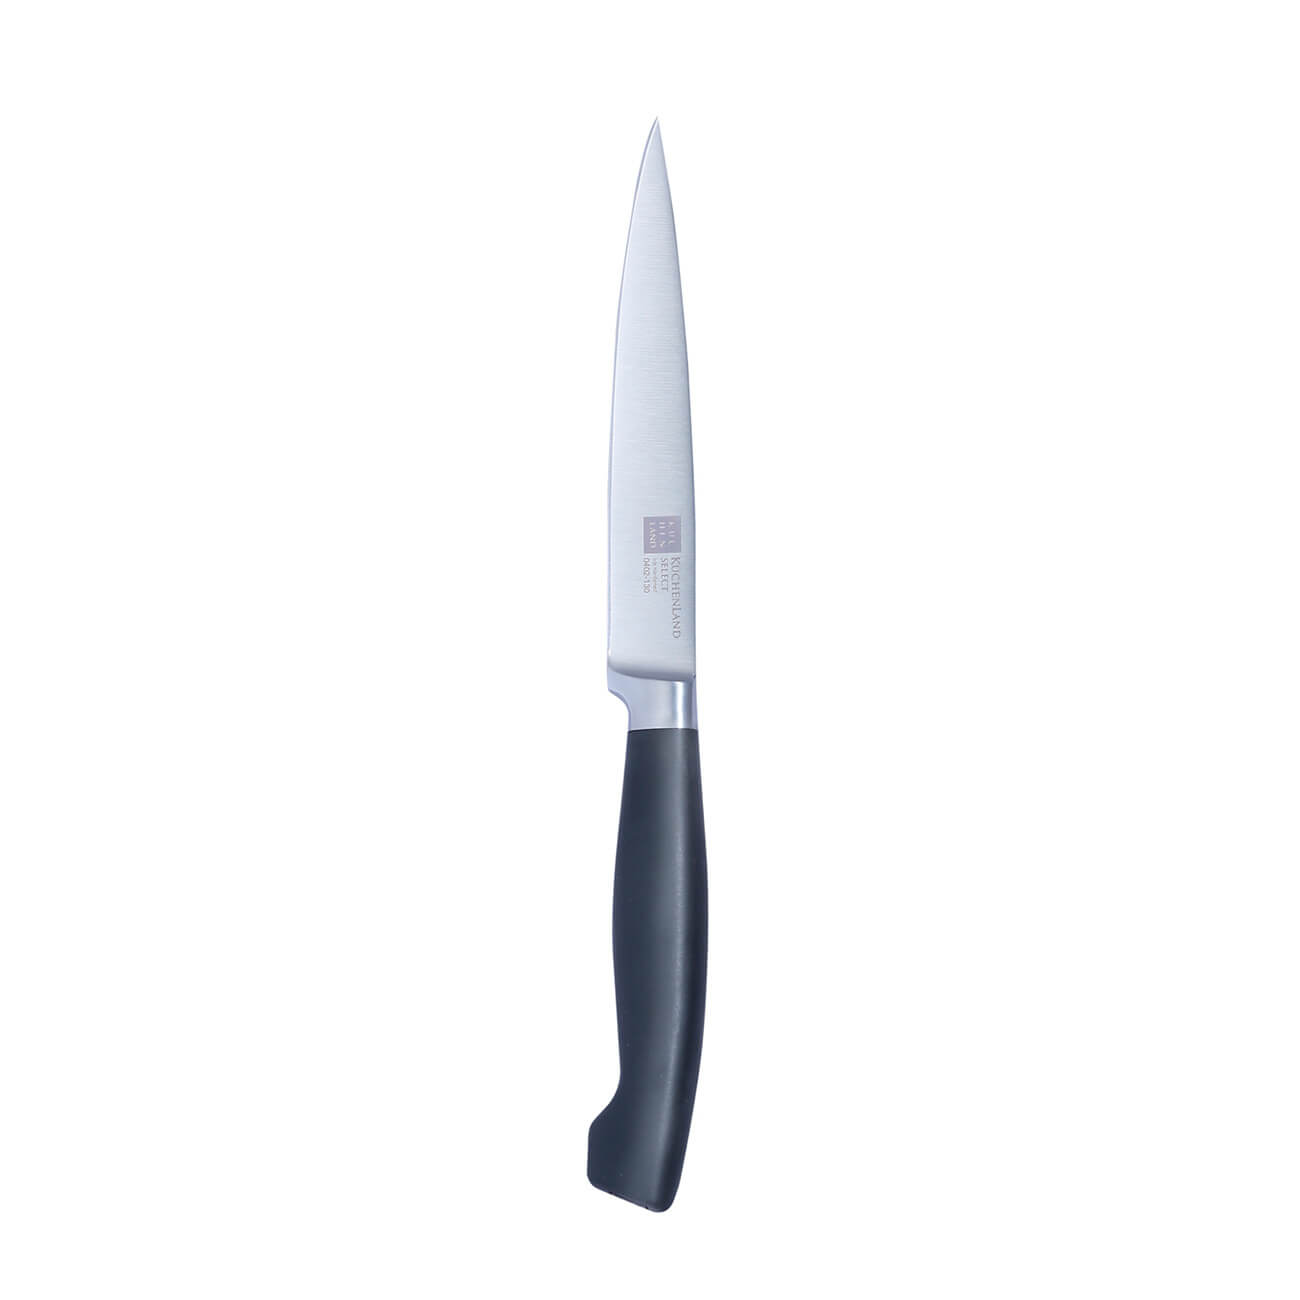 Kuchenland Нож для нарезки, 13 см, сталь/пластик, Select набор для выпечки 4 пр скалка венчик формы силикон сталь серый кролик и облако rabbit